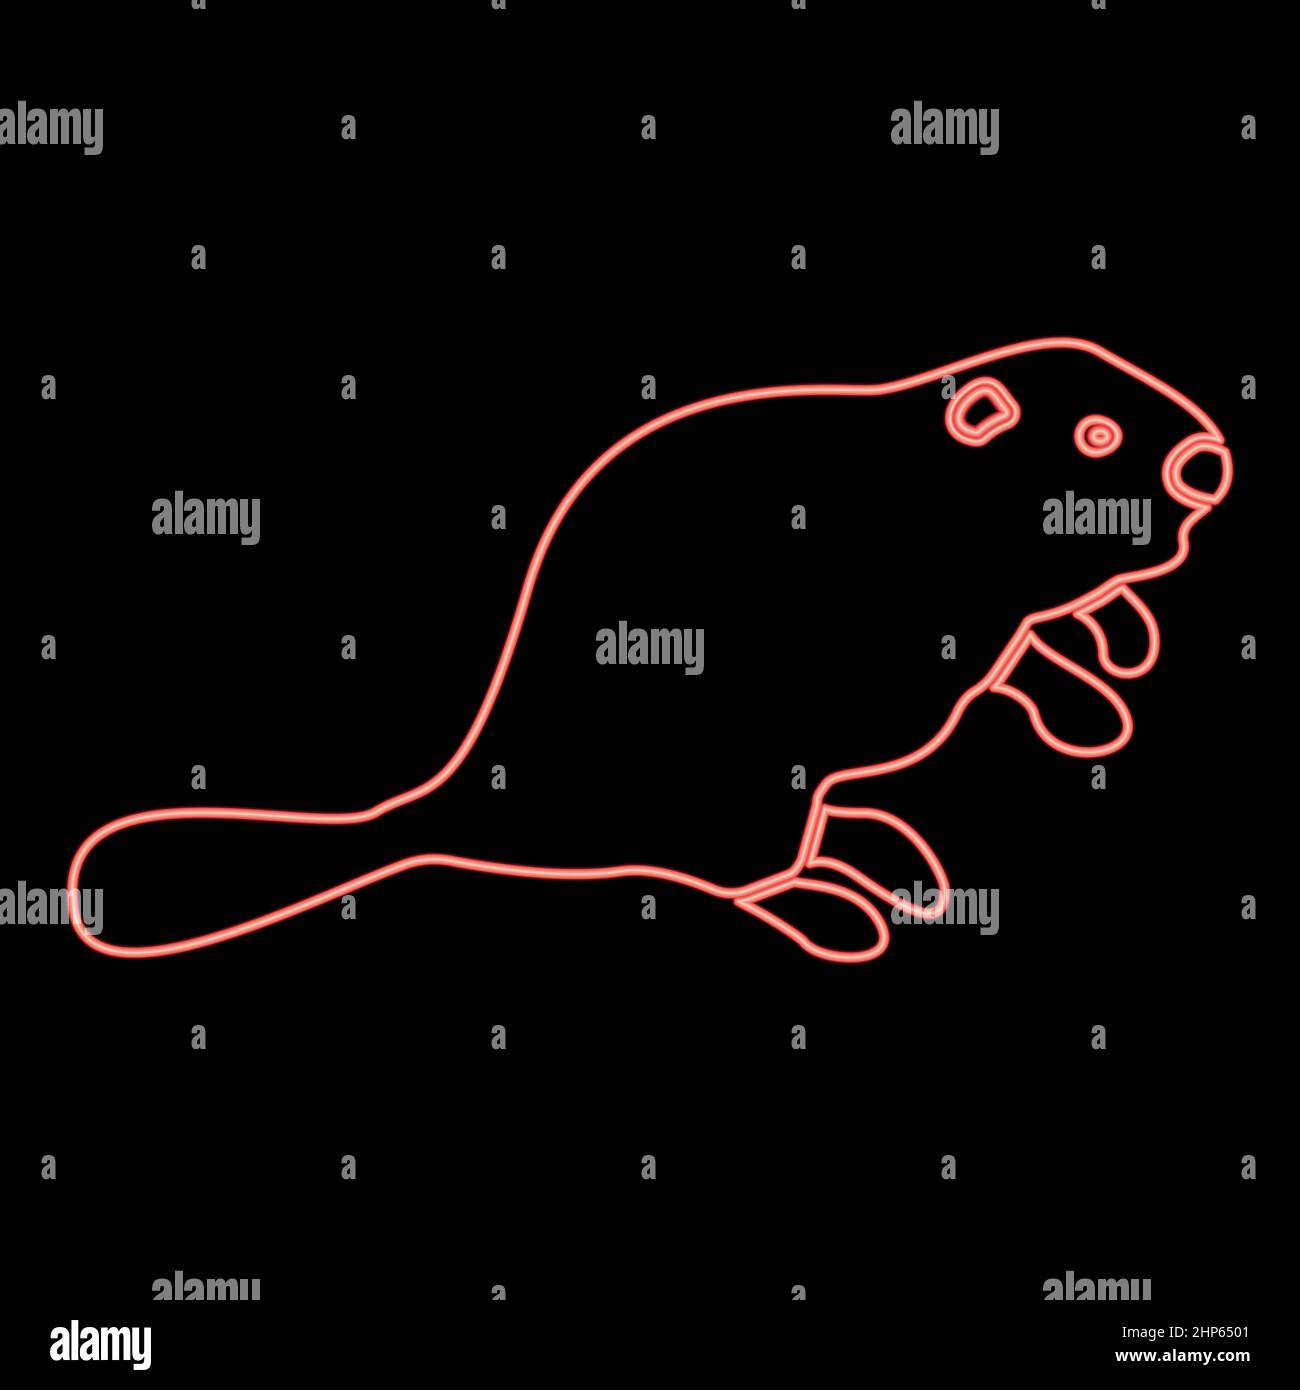 Image de style plat de l'illustration vectorielle rouge du castor au néon Illustration de Vecteur